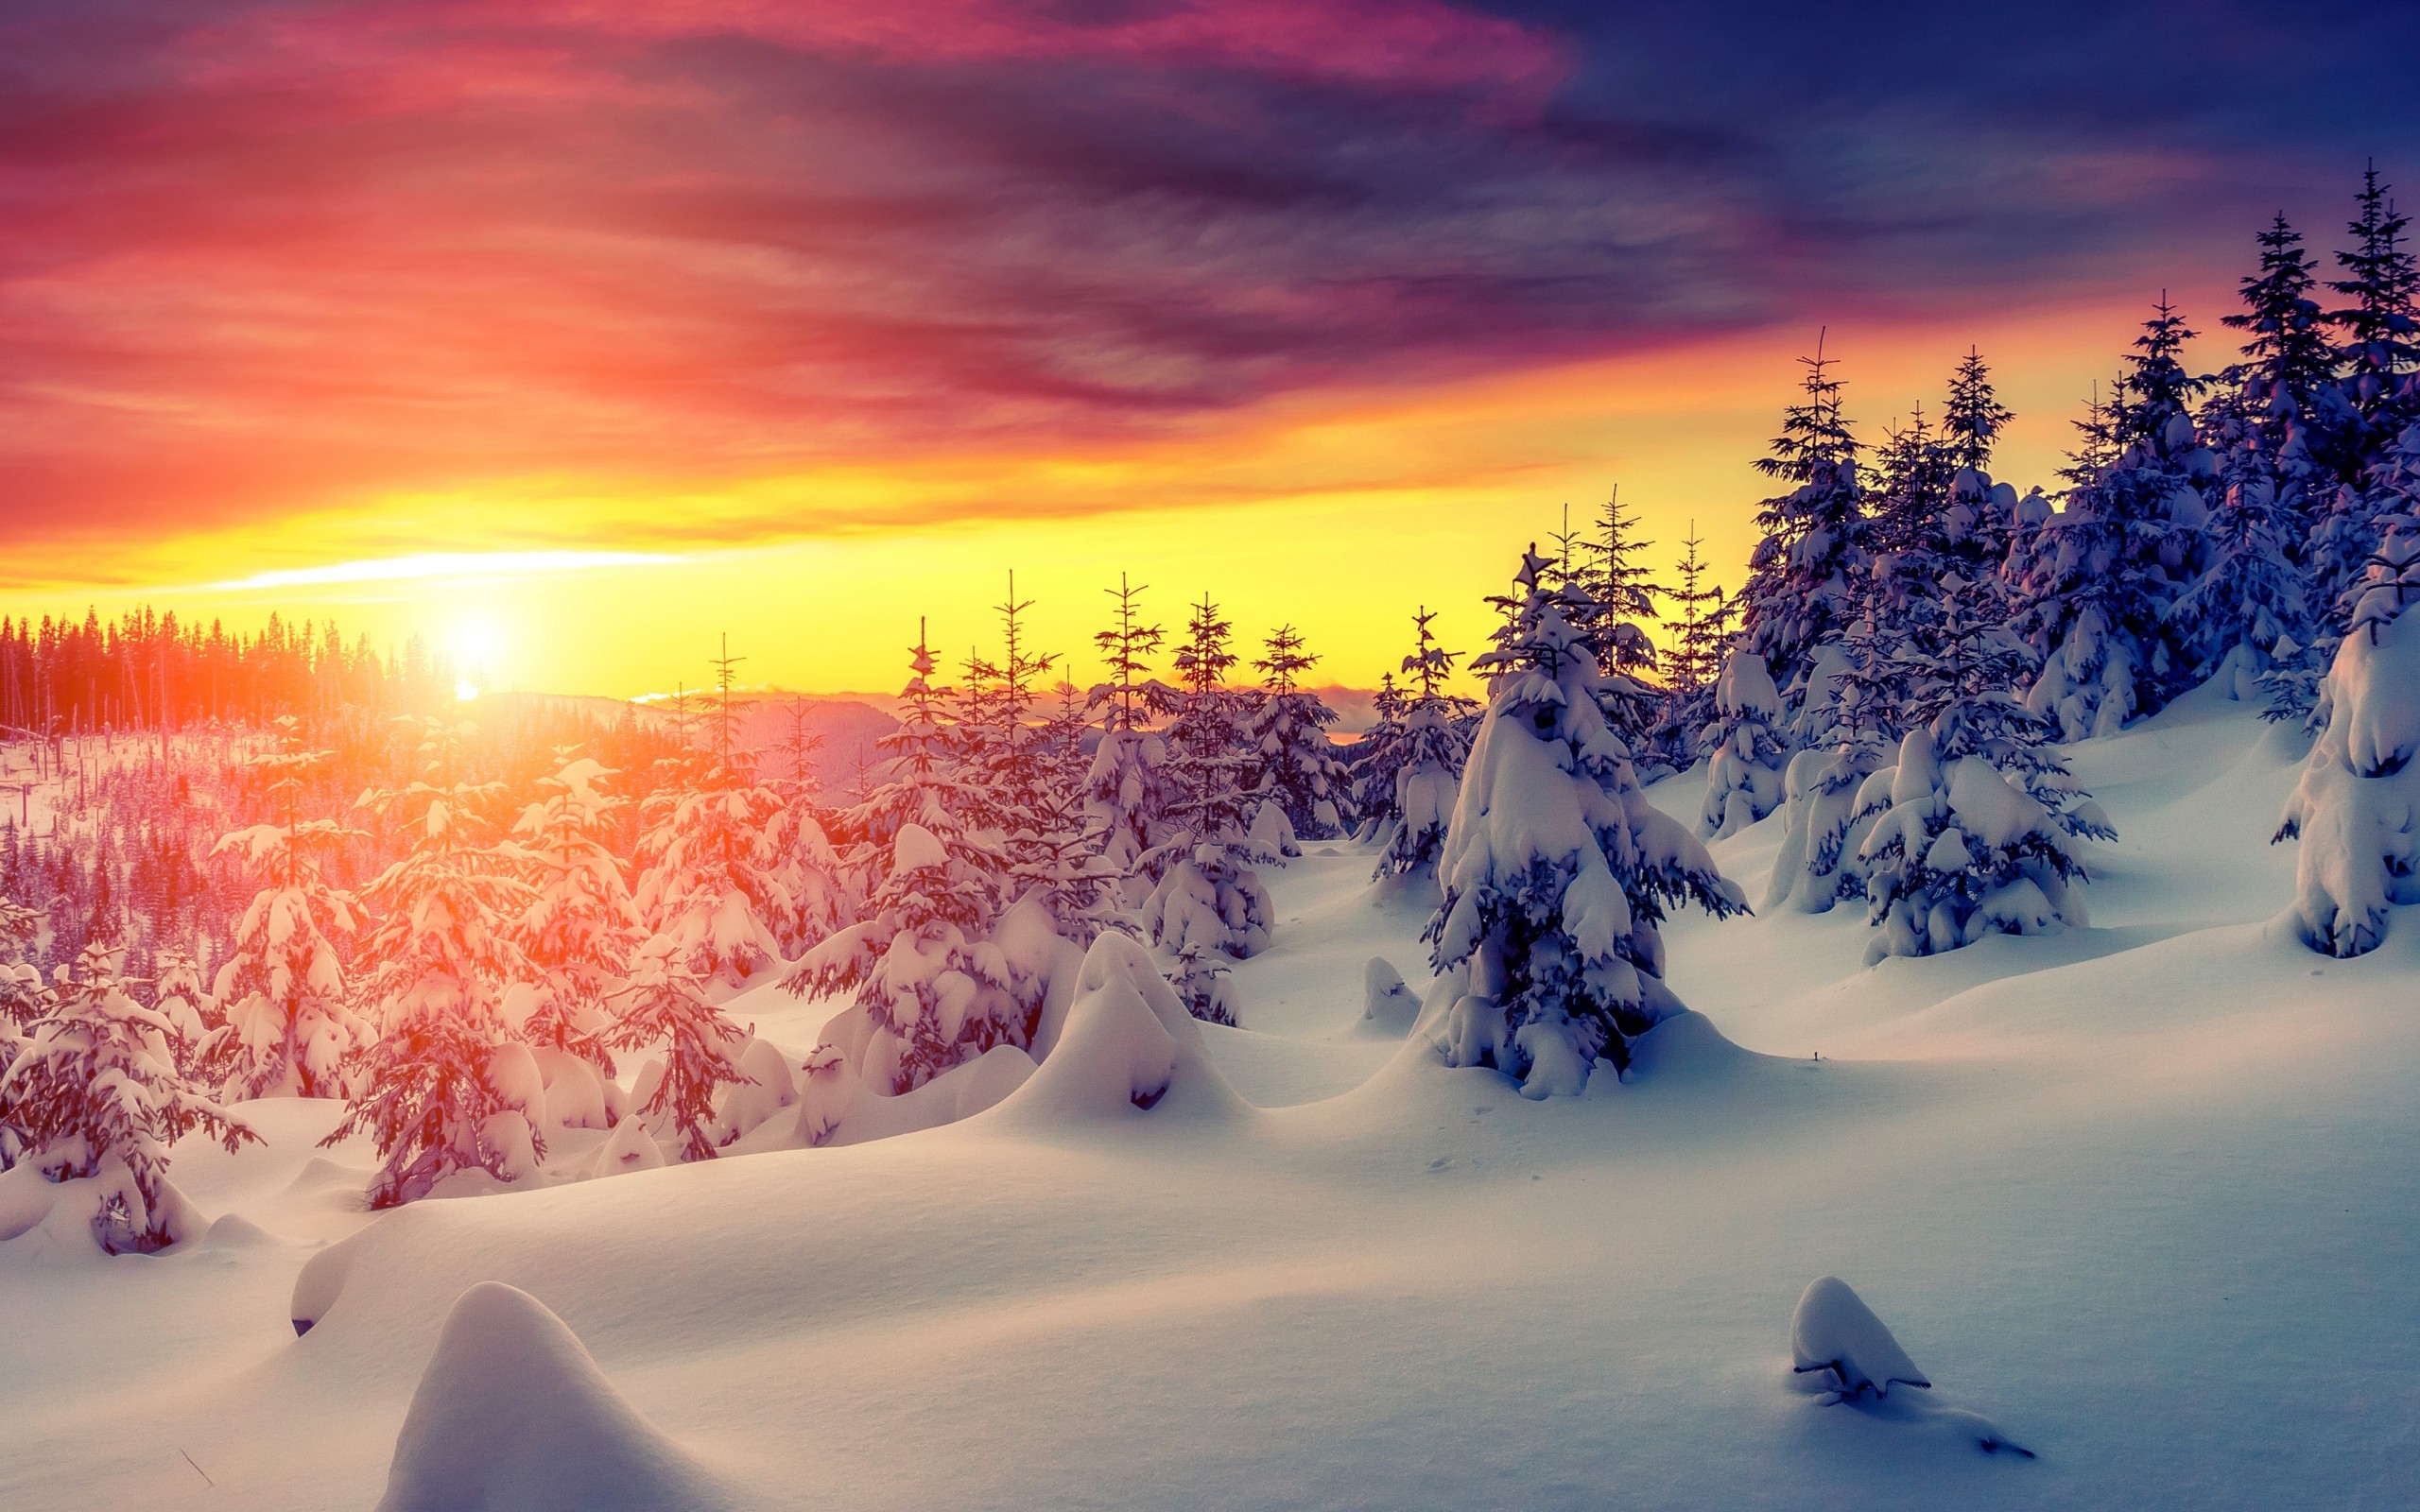 Hãy tải ngay bức ảnh nền đông tuyết 4K miễn phí để thưởng thức vẻ đẹp của mùa đông tuyết trắng trong lòng thành phố. Chất lượng hình ảnh sắc nét, cho bạn những trải nghiệm tuyệt vời về mùa đông tuyết bên ngôi nhà của mình. Điểm qua ngay những bức ảnh nền đẹp nhất của chúng tôi và tải miễn phí ngay hôm nay!